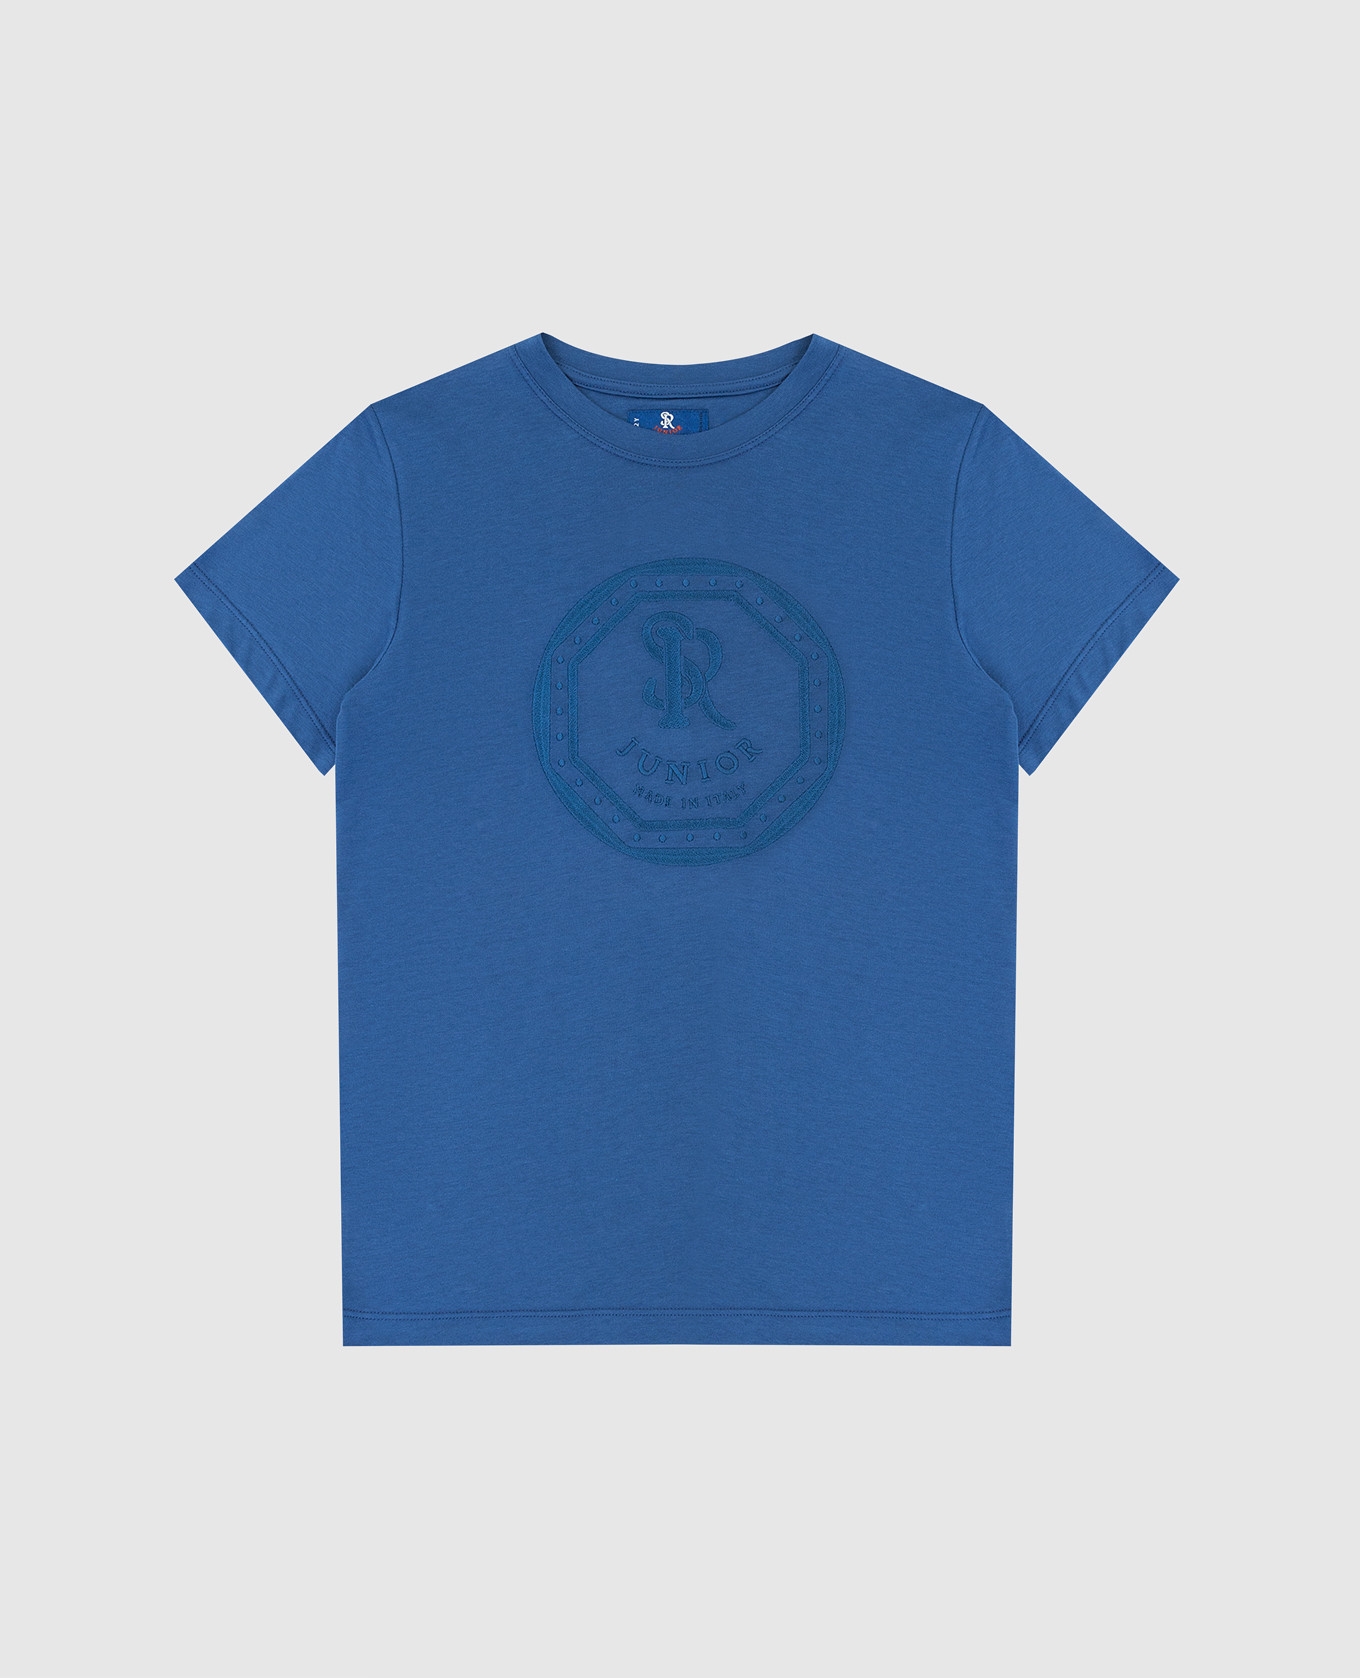 Детская синяя футболка с вышивкой монограммы